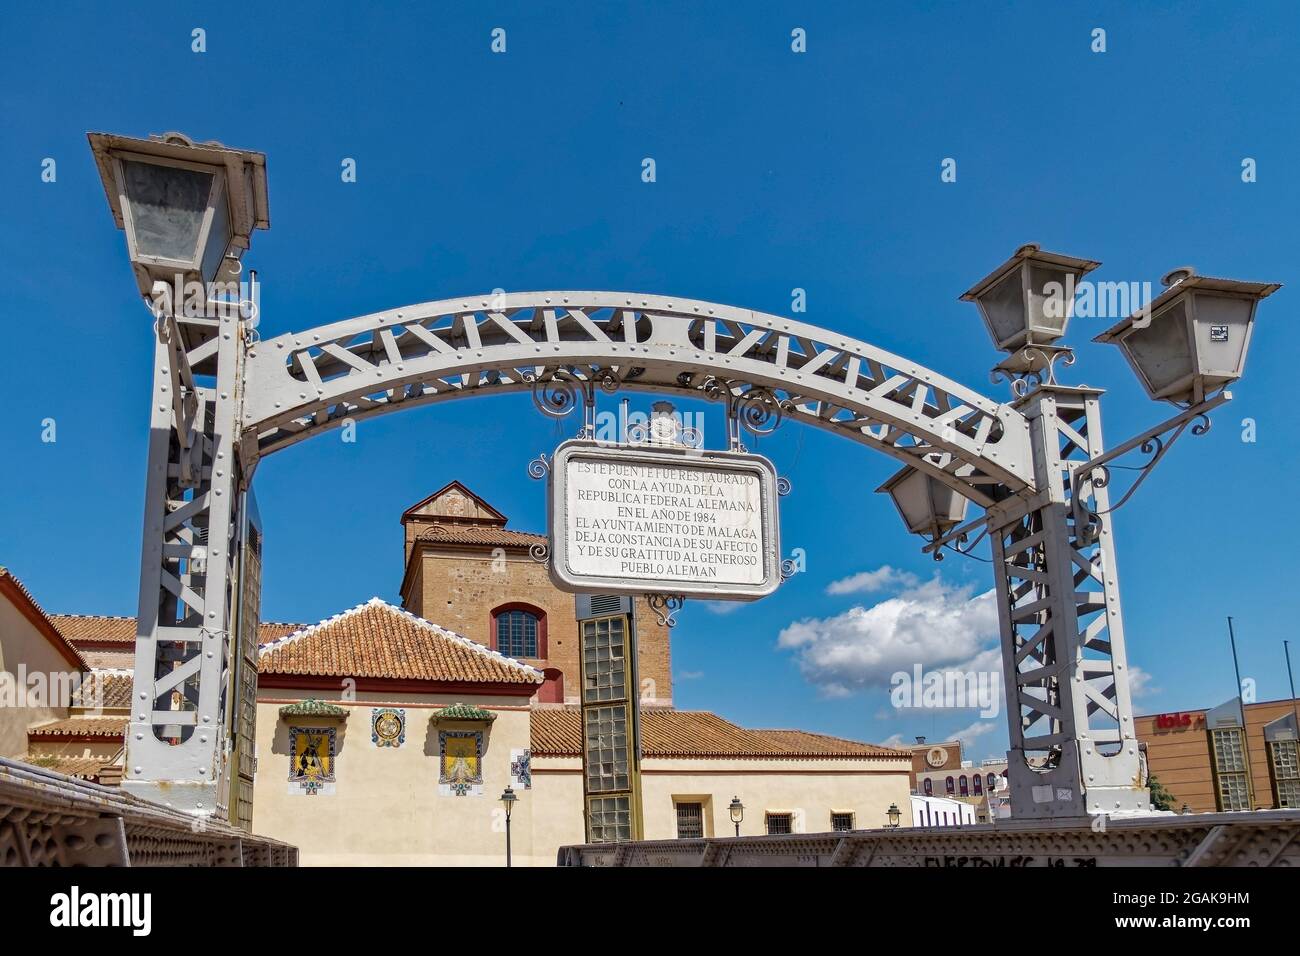 Puente de los Alemanes, am Fluss Guadalmedina,  Iglesia de Santo Domingo de Guzman,  Malaga, Costa del Sol, Provinz Malaga, Andalusien, Spanien, Europ Stock Photo